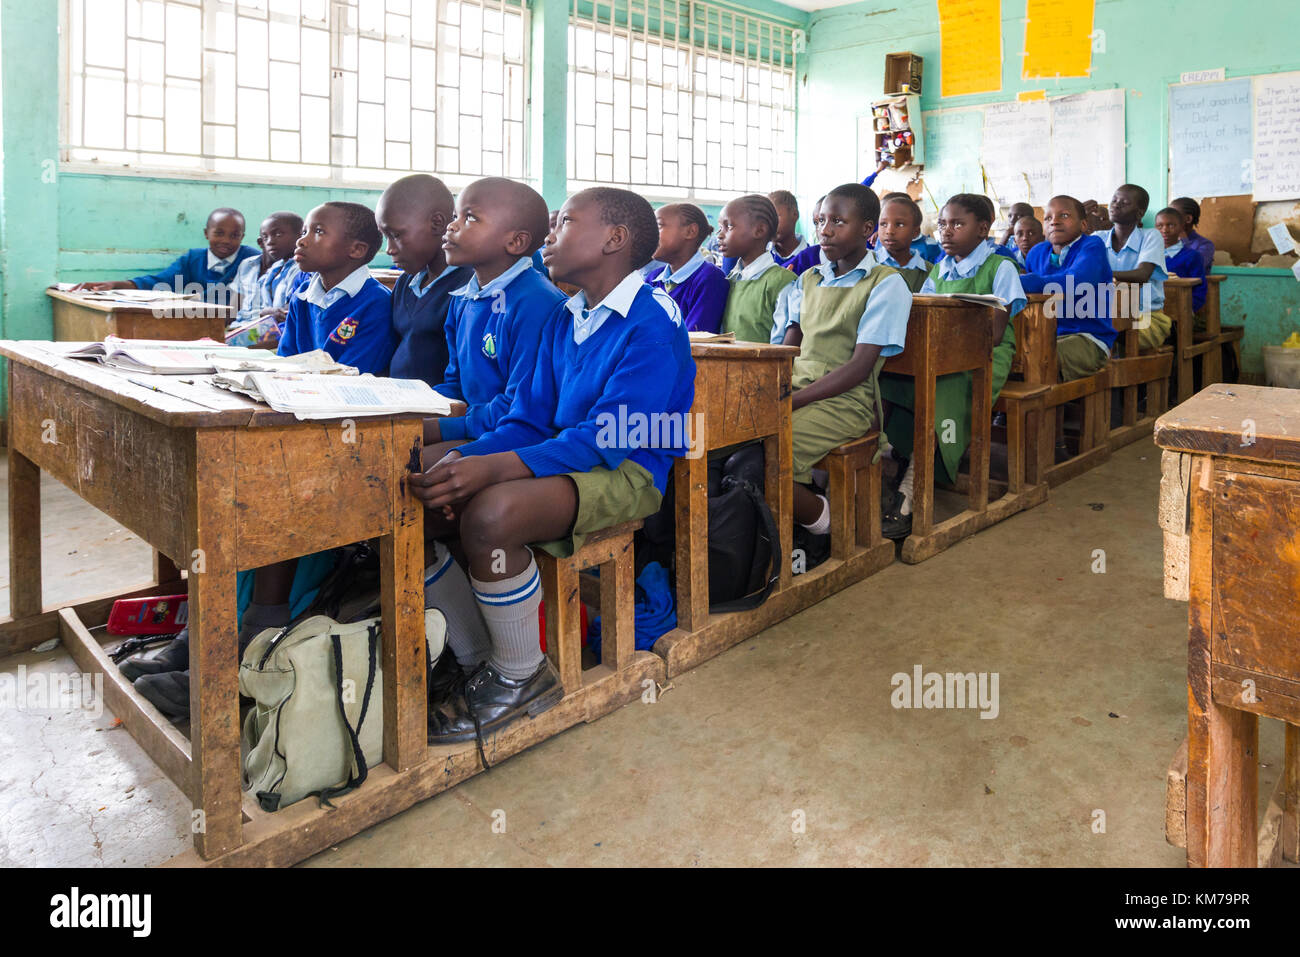 Los niños de la escuela secundaria con uniforme se sentaron en escritorios de madera escuchando a su maestro durante la clase, Nairobi, Kenya Foto de stock